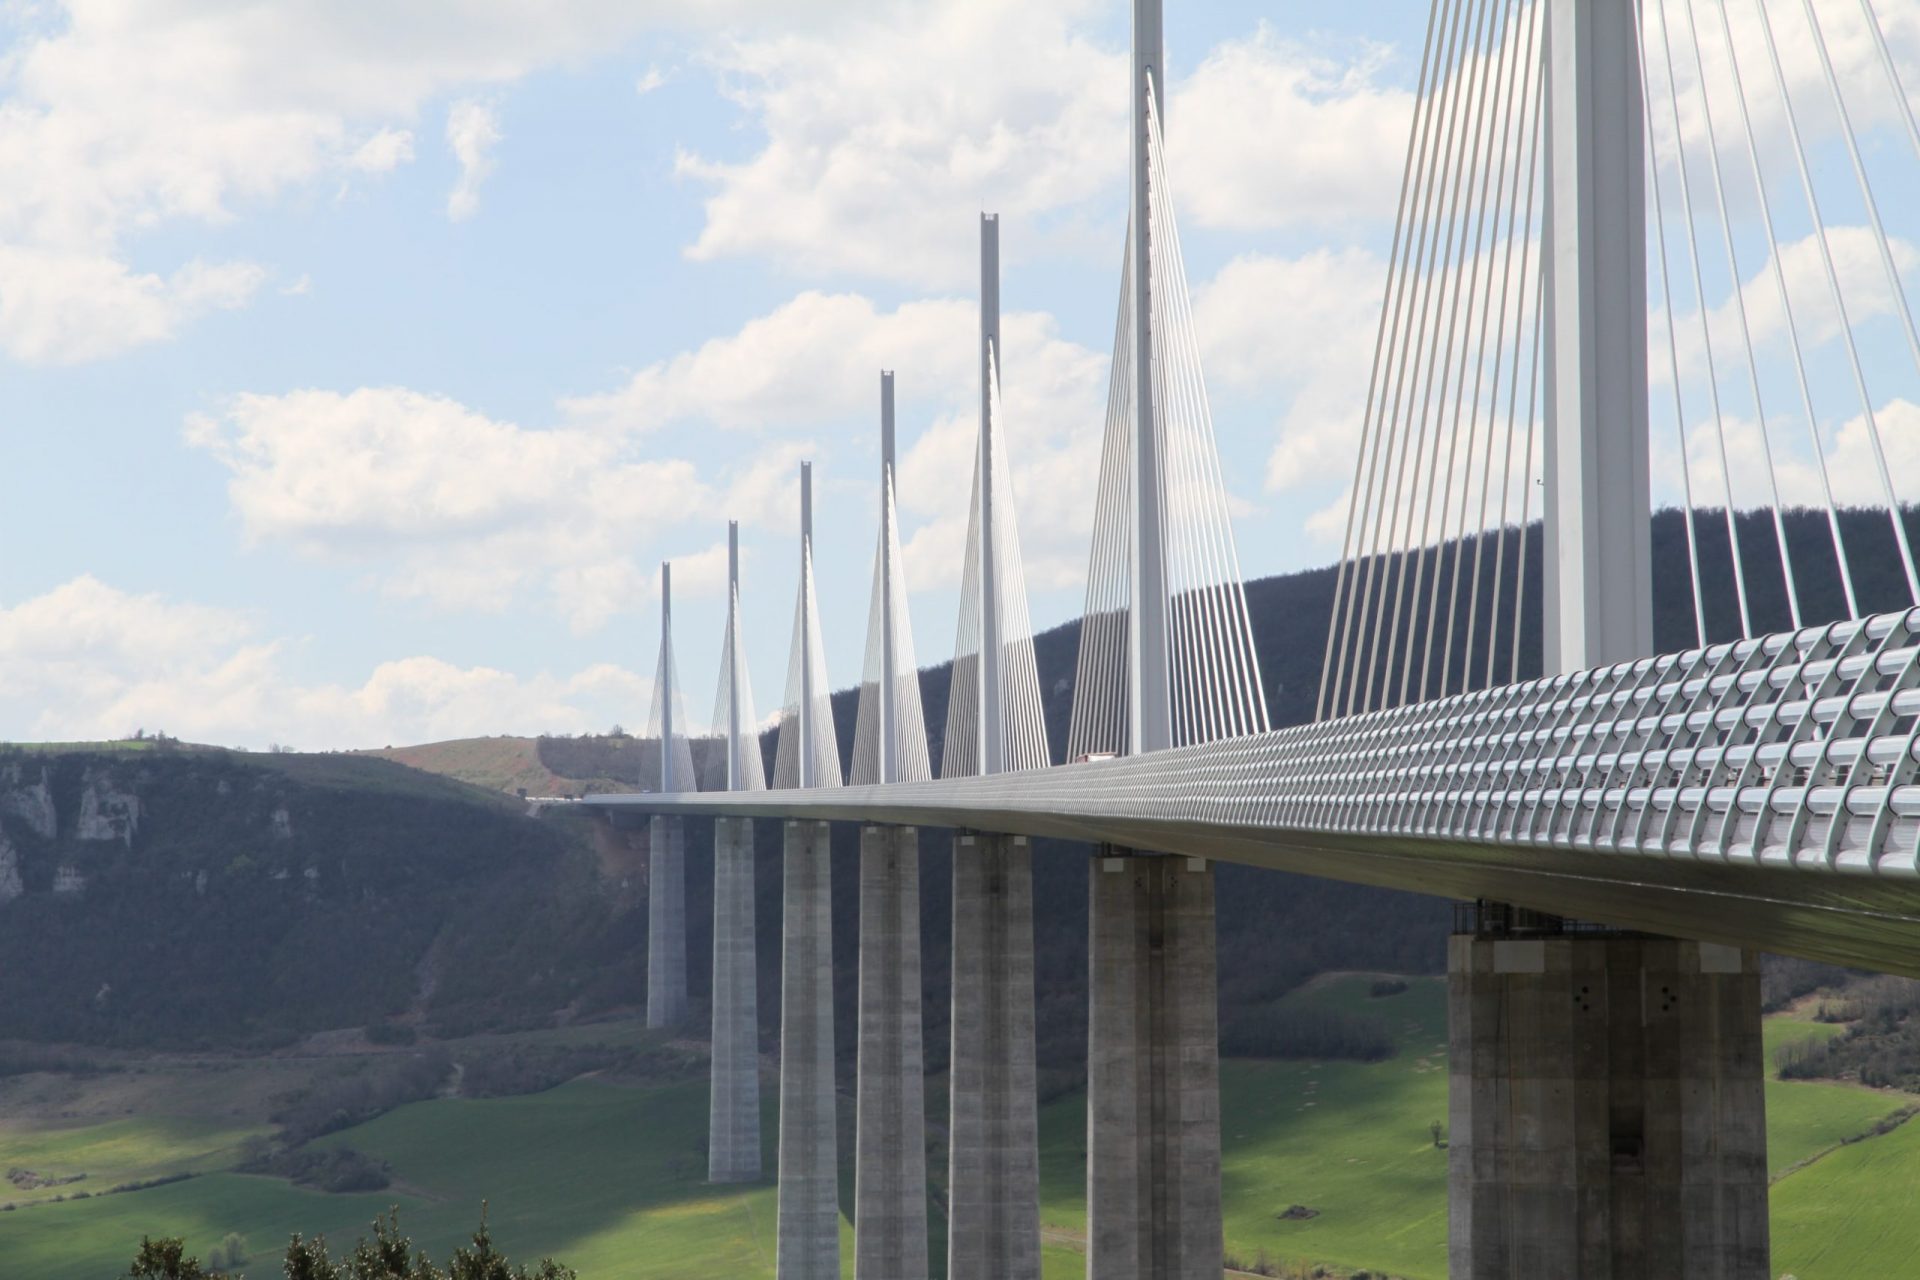 Le viaduc de Millau, un pont long de 2,46 km